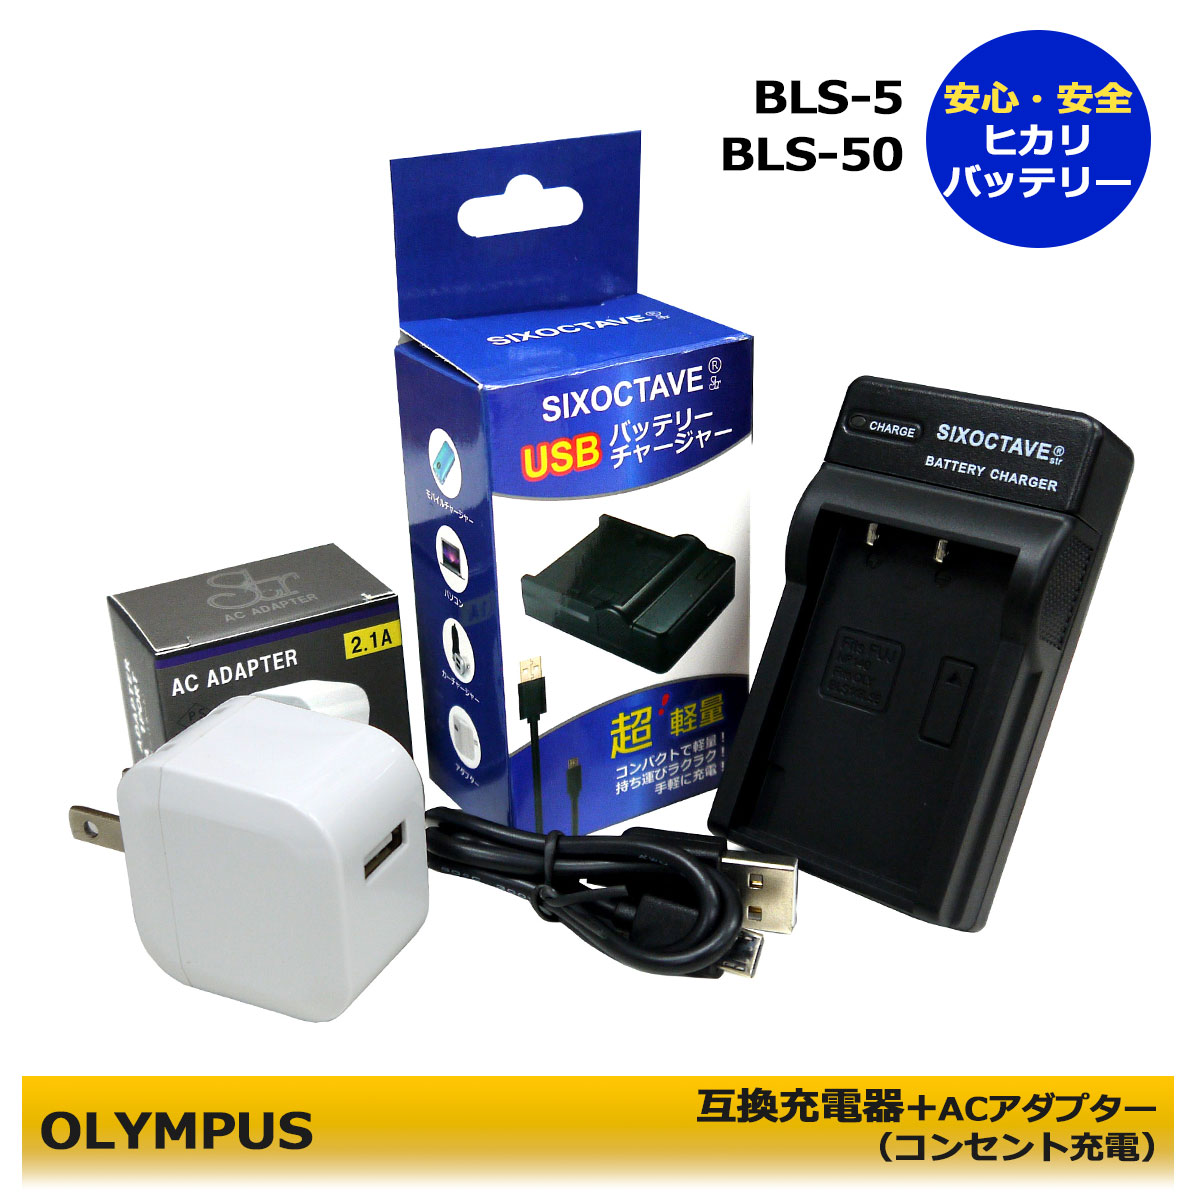 ★コンセント充電可能★　BLS-5 / BLS-50 / P